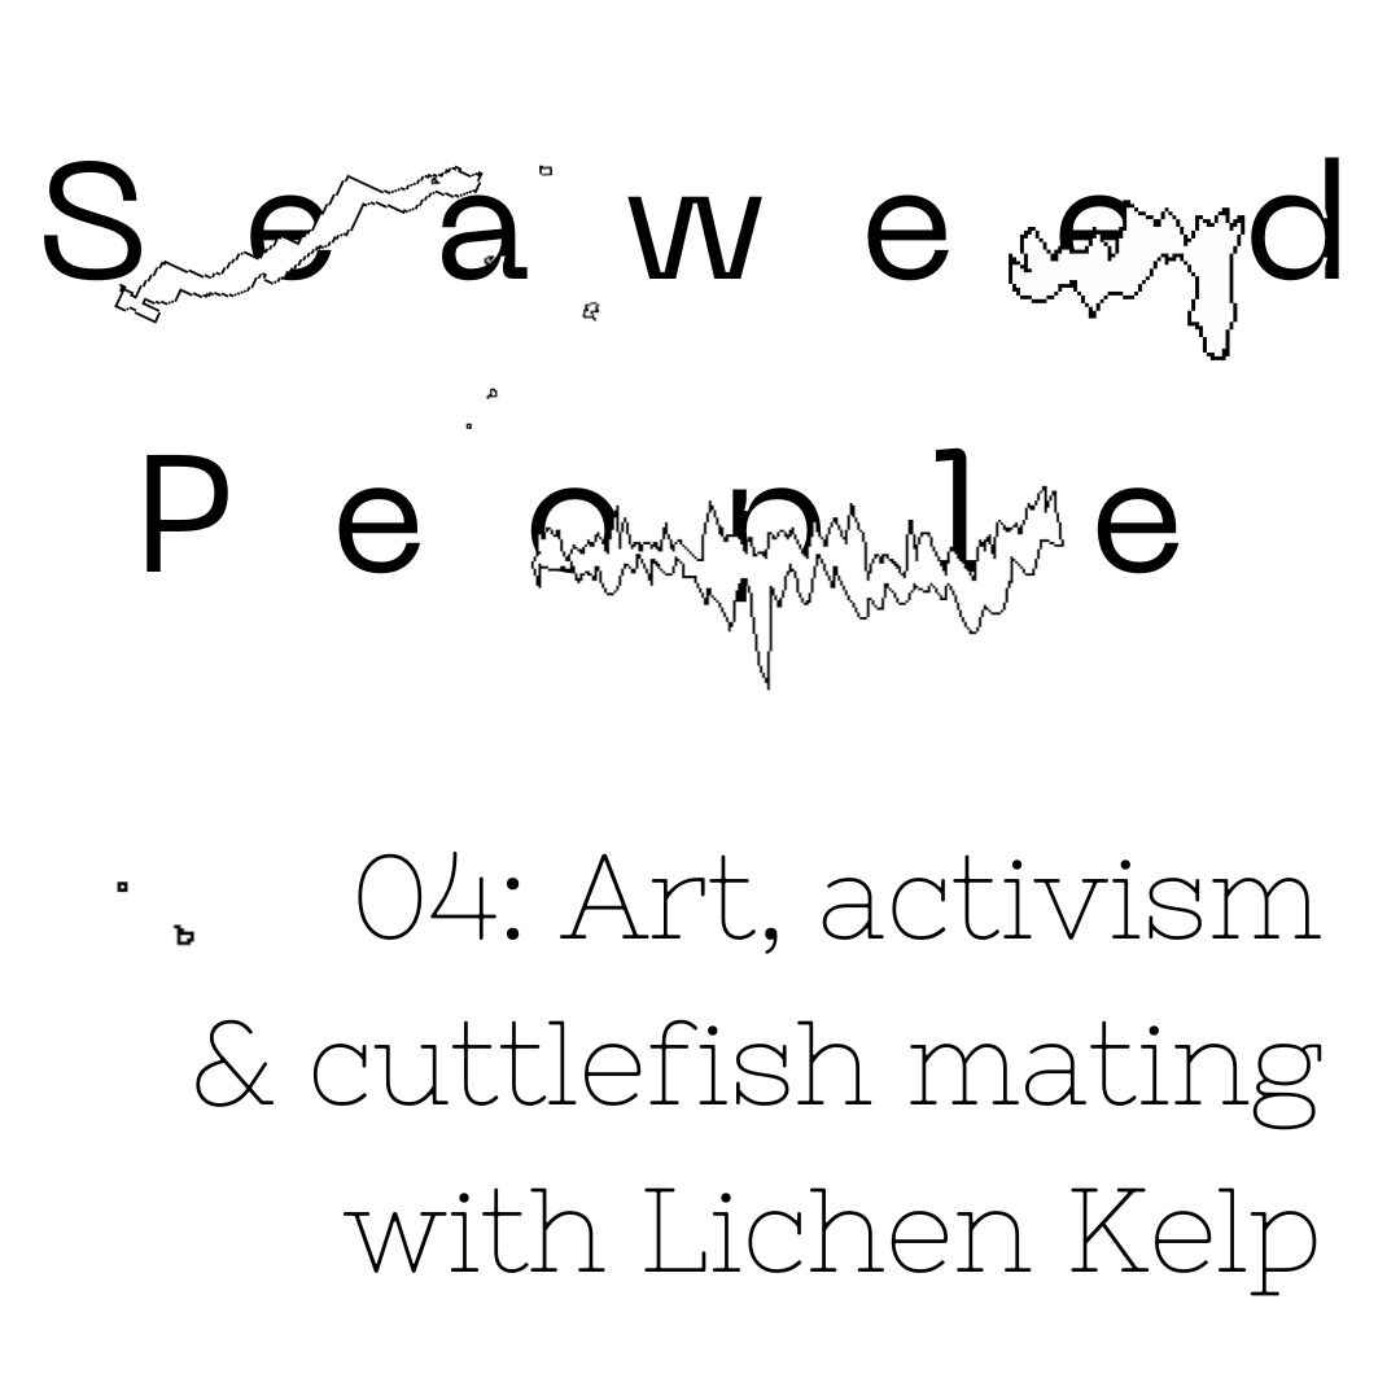 Art, activism & cuttlefish mating with Lichen Kelp